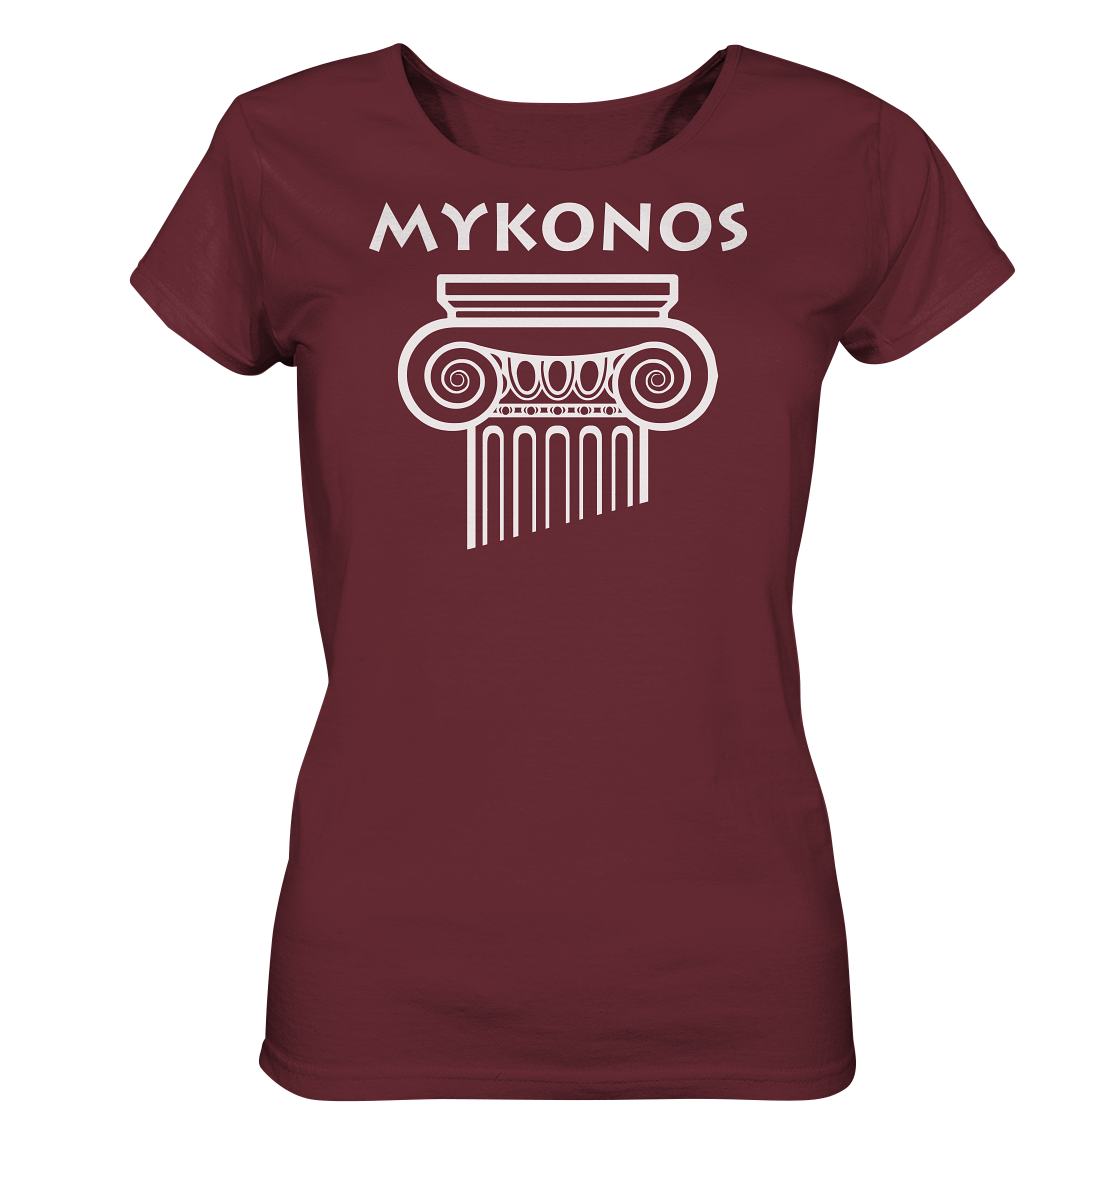 Mykonos Griechischer Säulenkopf - Ladies Organic Shirt